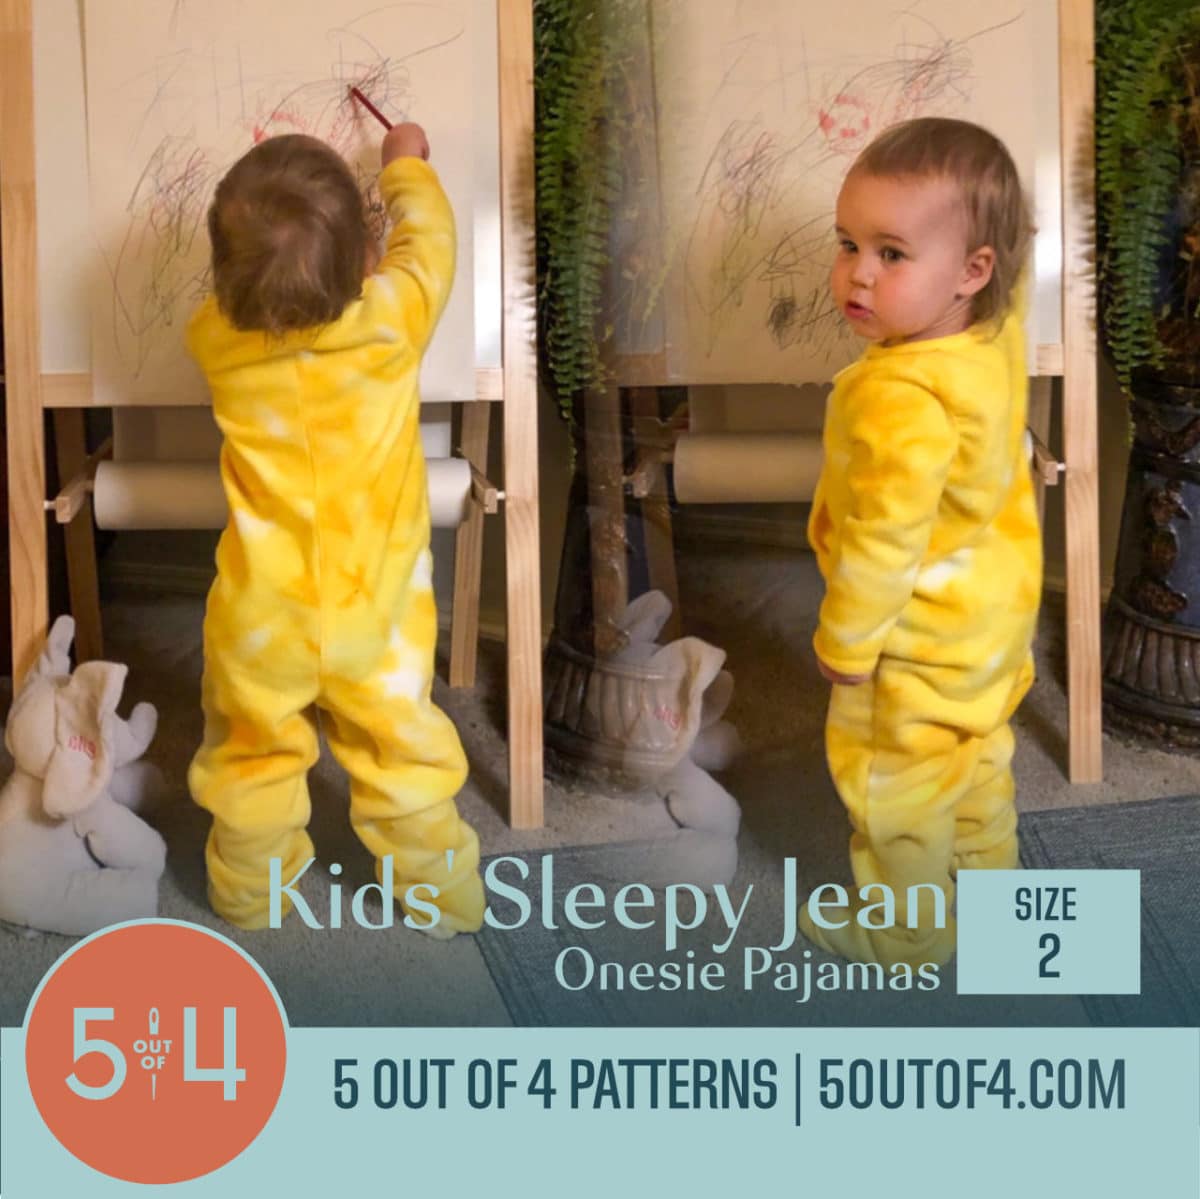 Kids' Sleepy Jean Onesie Pajamas - 5 out of 4 Patterns